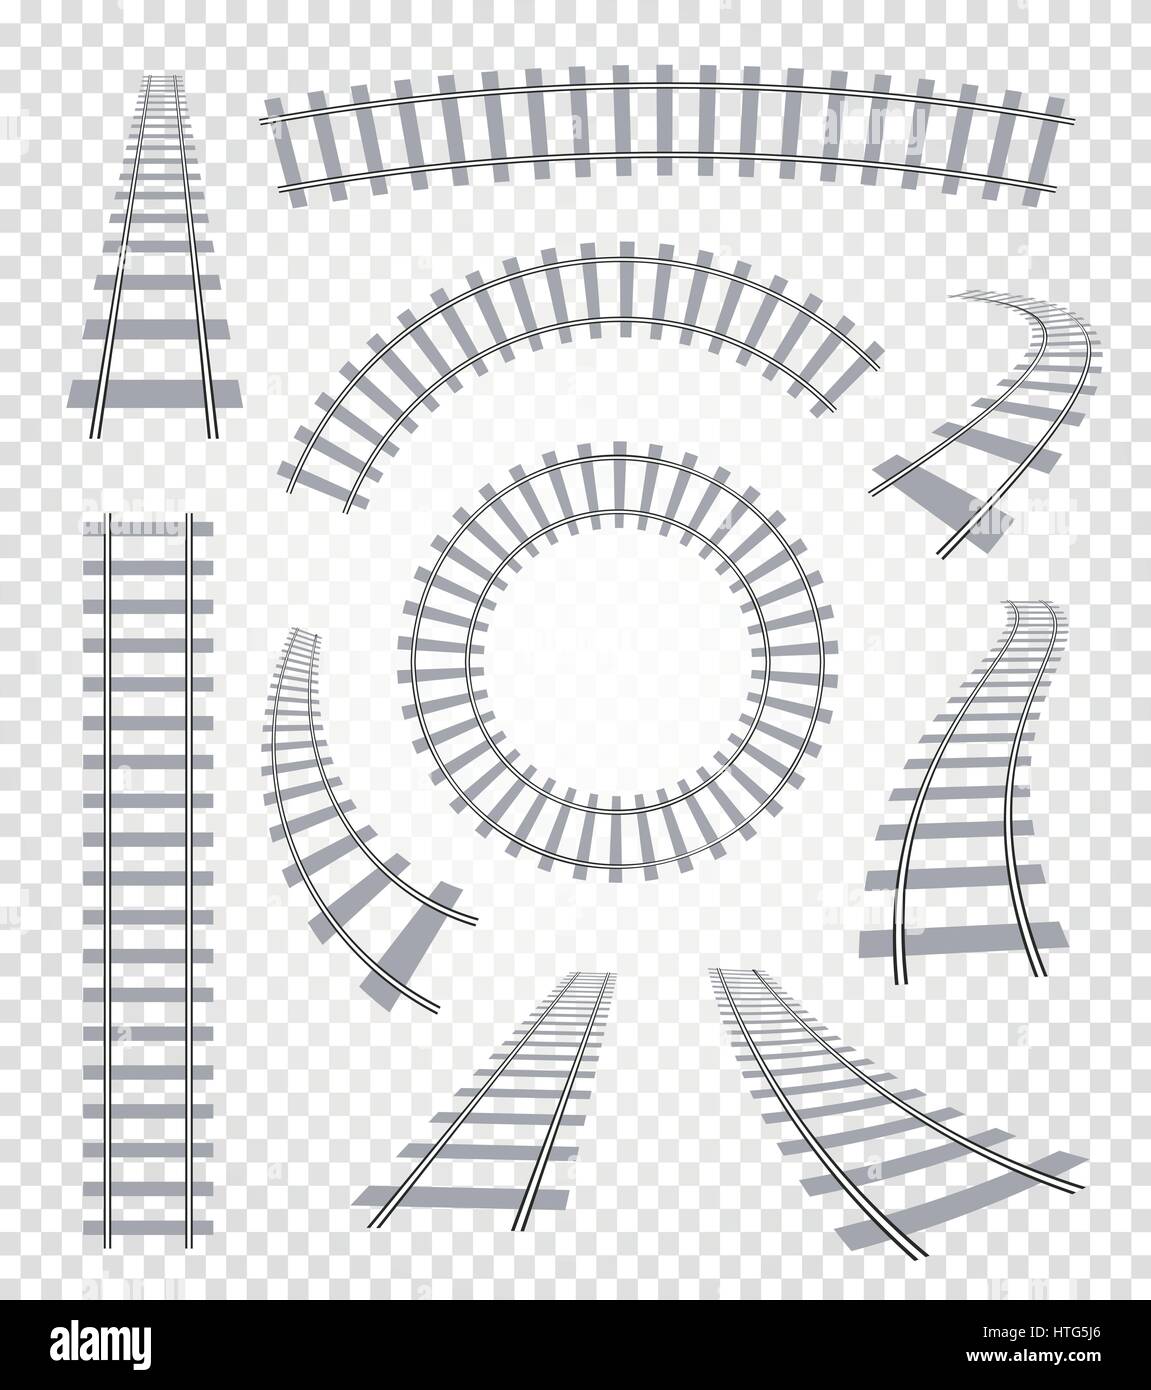 Curvy isolés et tout droit rails de chemin de fer, vue de dessus, la collecte des éléments cont illustrations vectorielles sur fond blanc Illustration de Vecteur